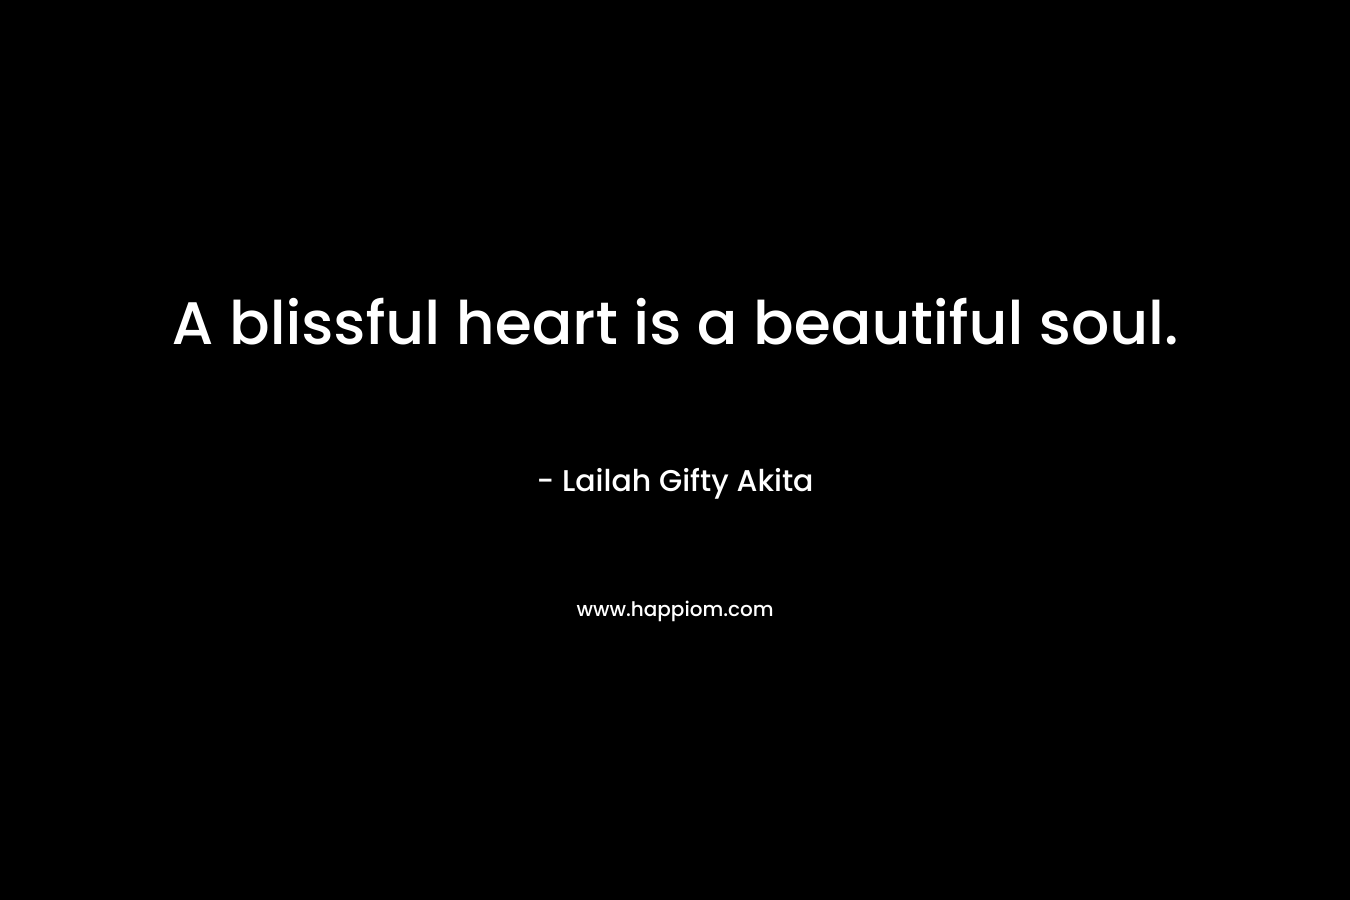 A blissful heart is a beautiful soul.